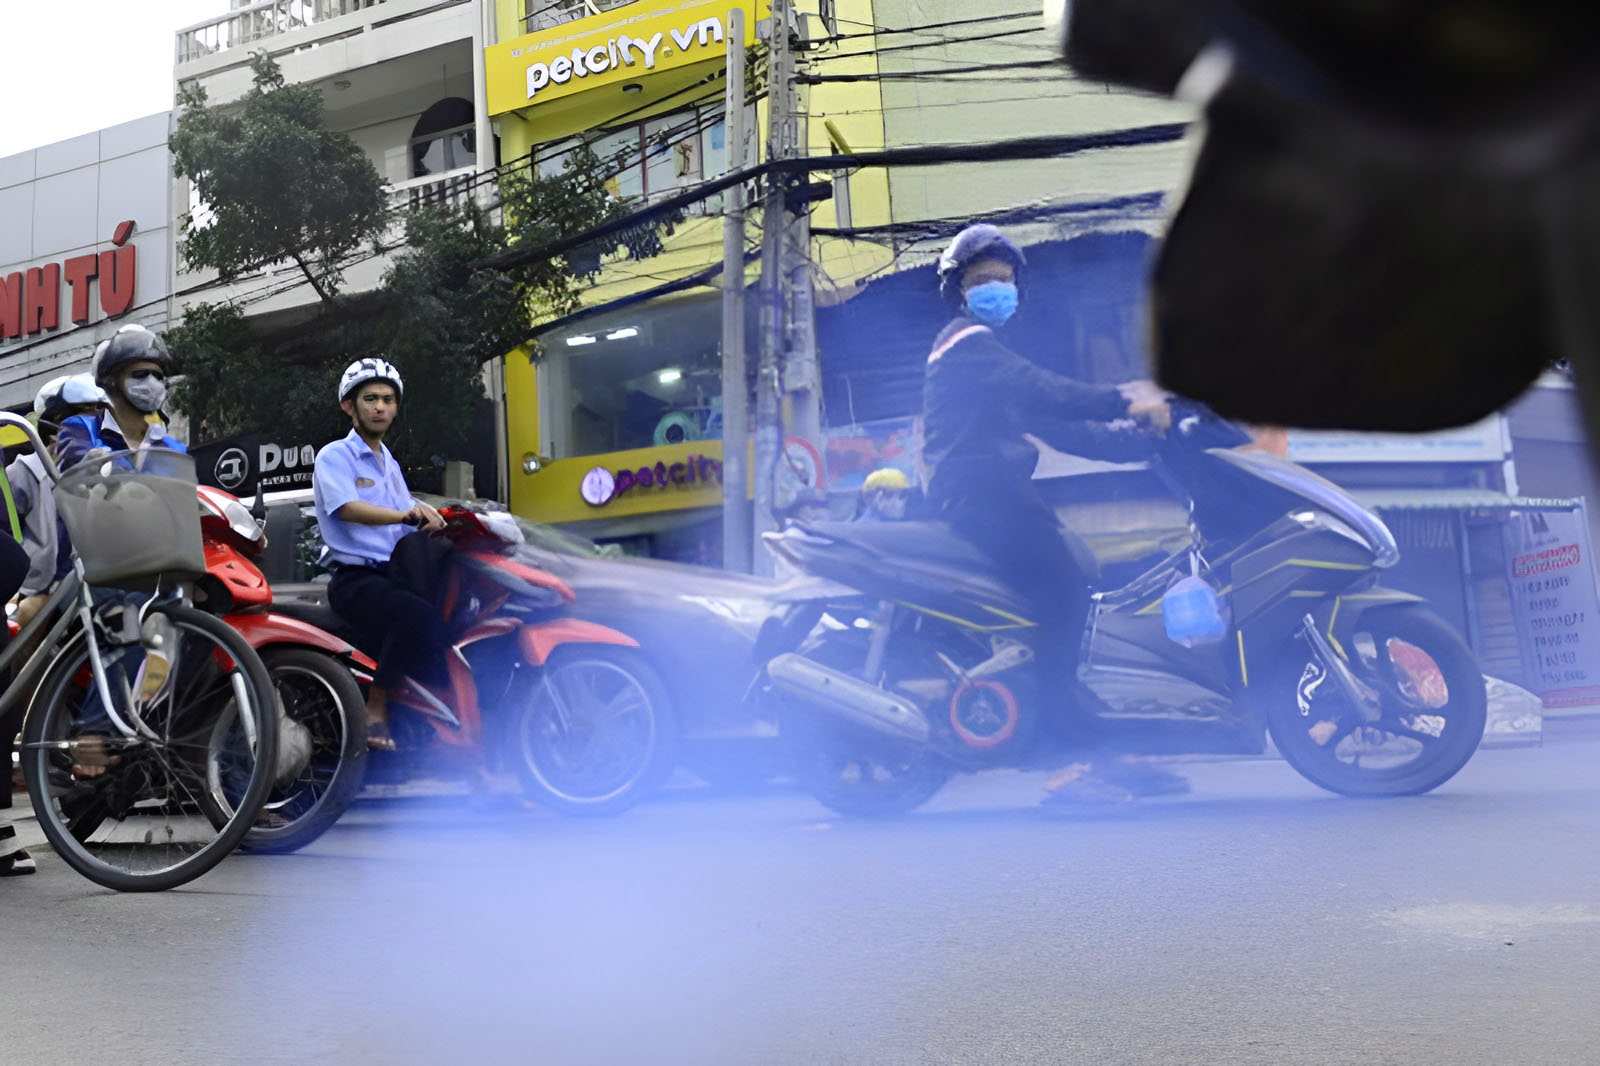 Khi xe máy xả khói xanh là dấu hiệu động cơ đang đốt dầu bôi trơn trong động cơ